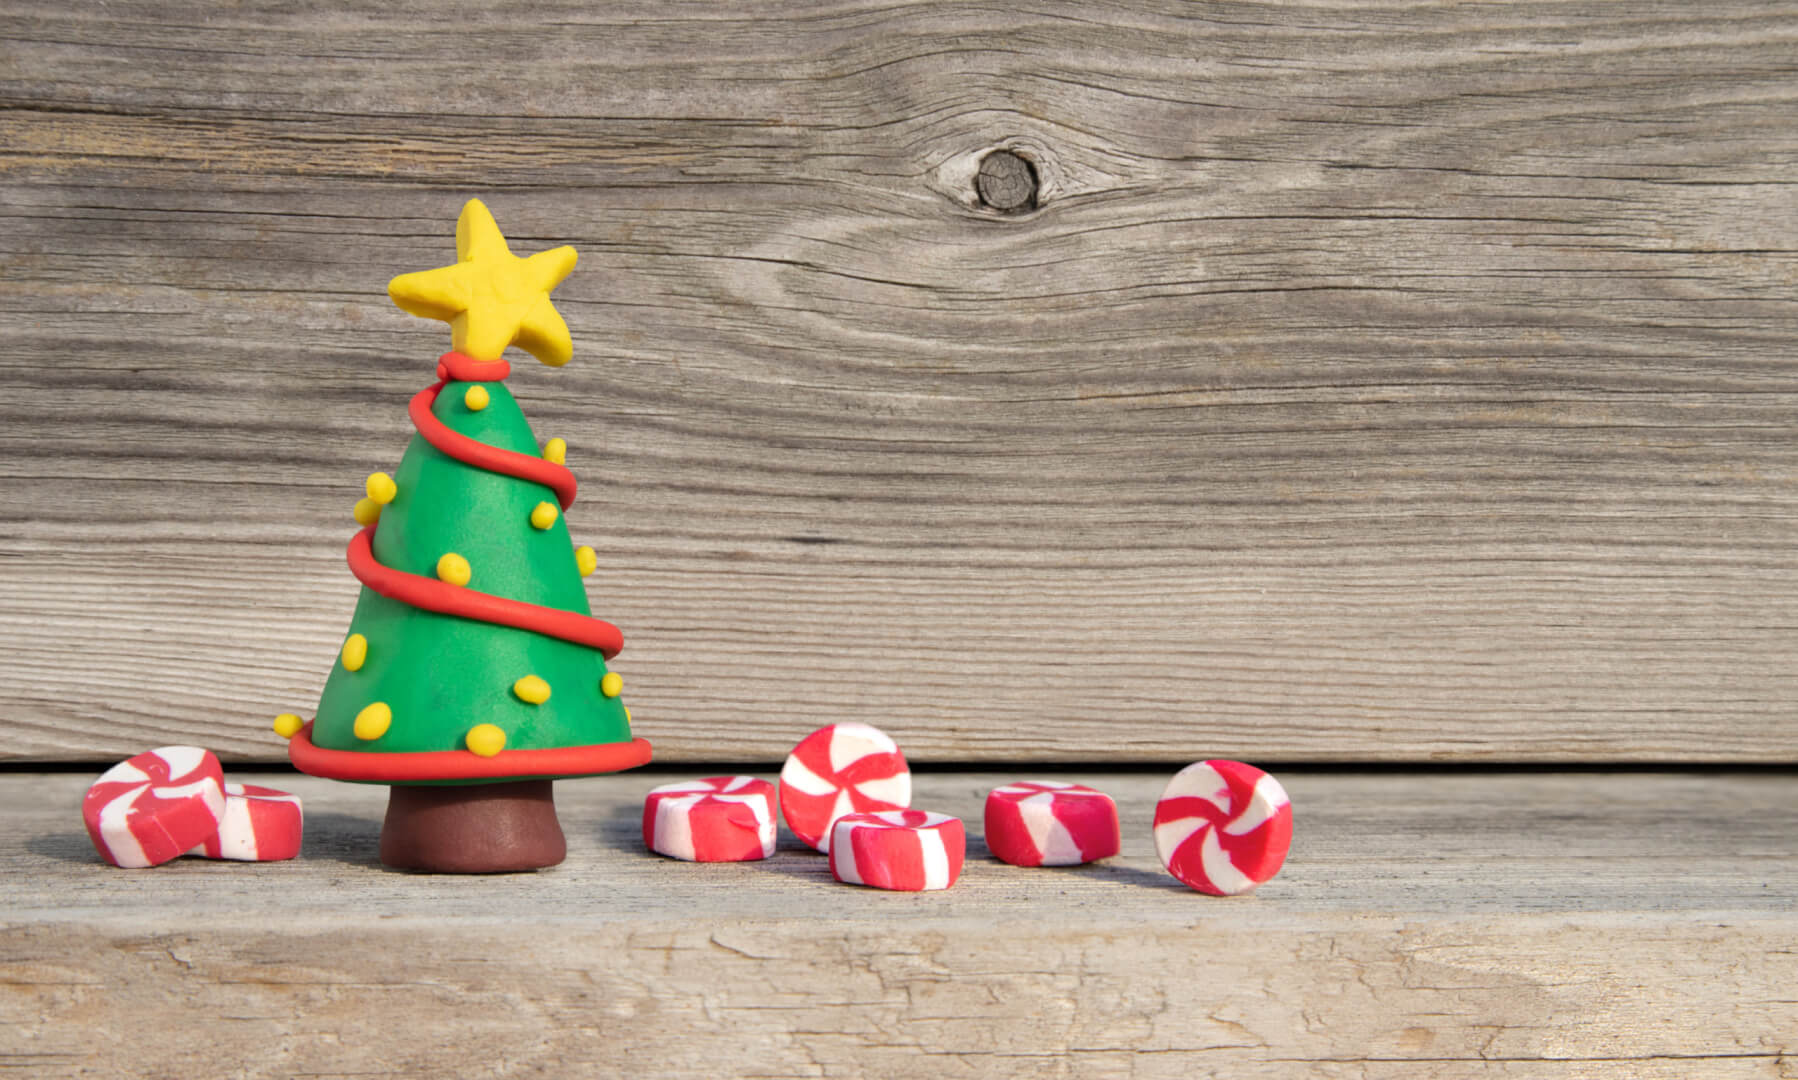 En la imagen se muestra un árbol de navidad hecho con arcilla polimérica con adornos como la estrella en la parte superior.